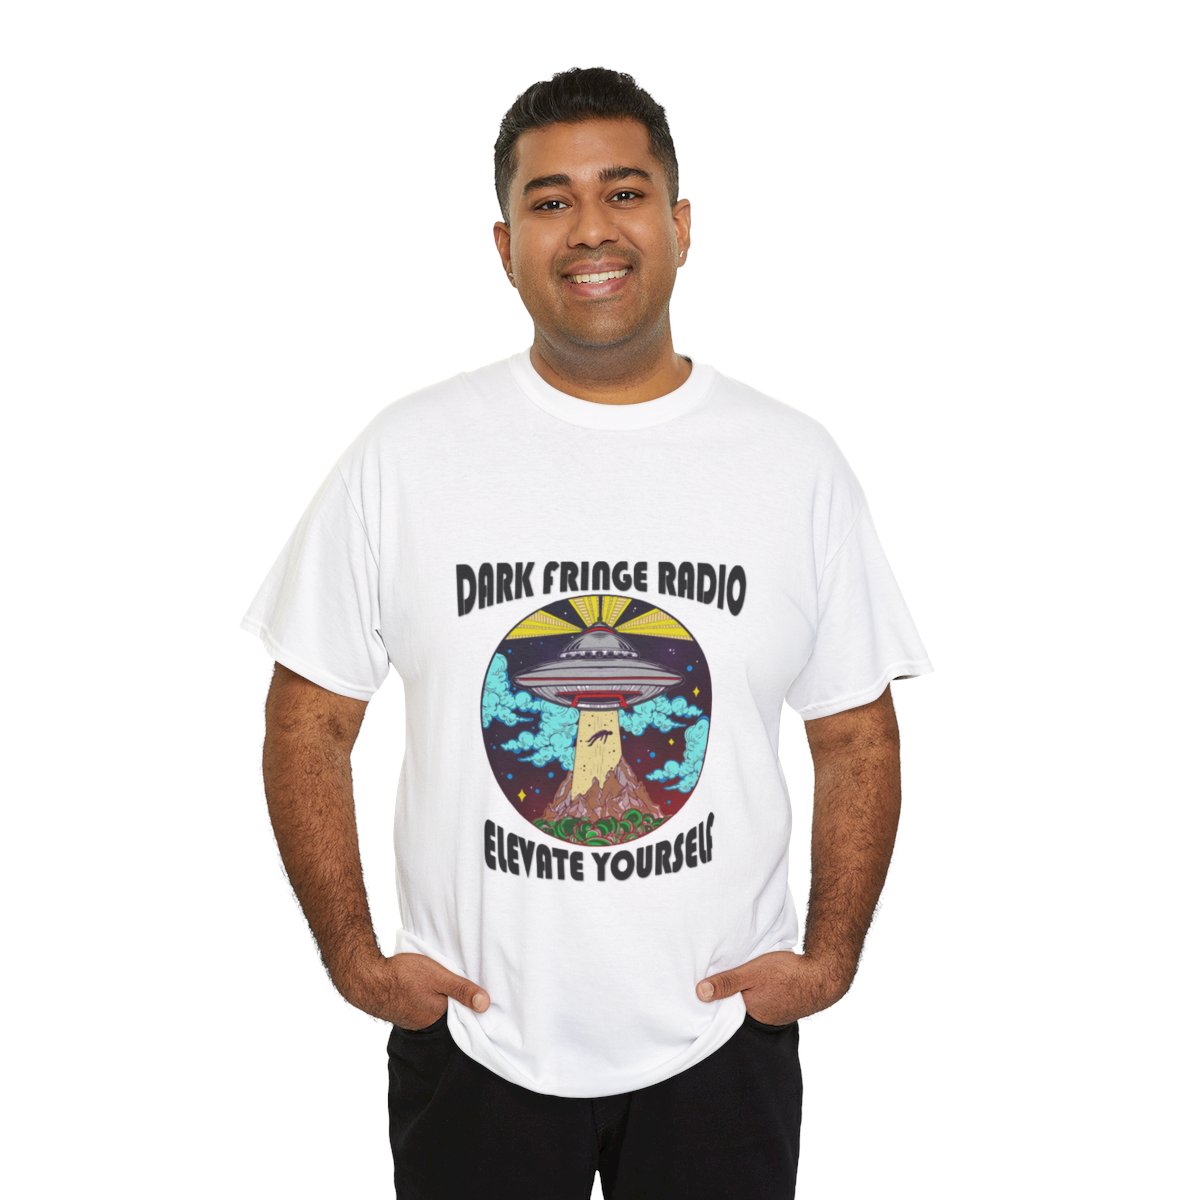 Dark Fringe Radio "Elevate Yourself" T-Shirt product thumbnail image